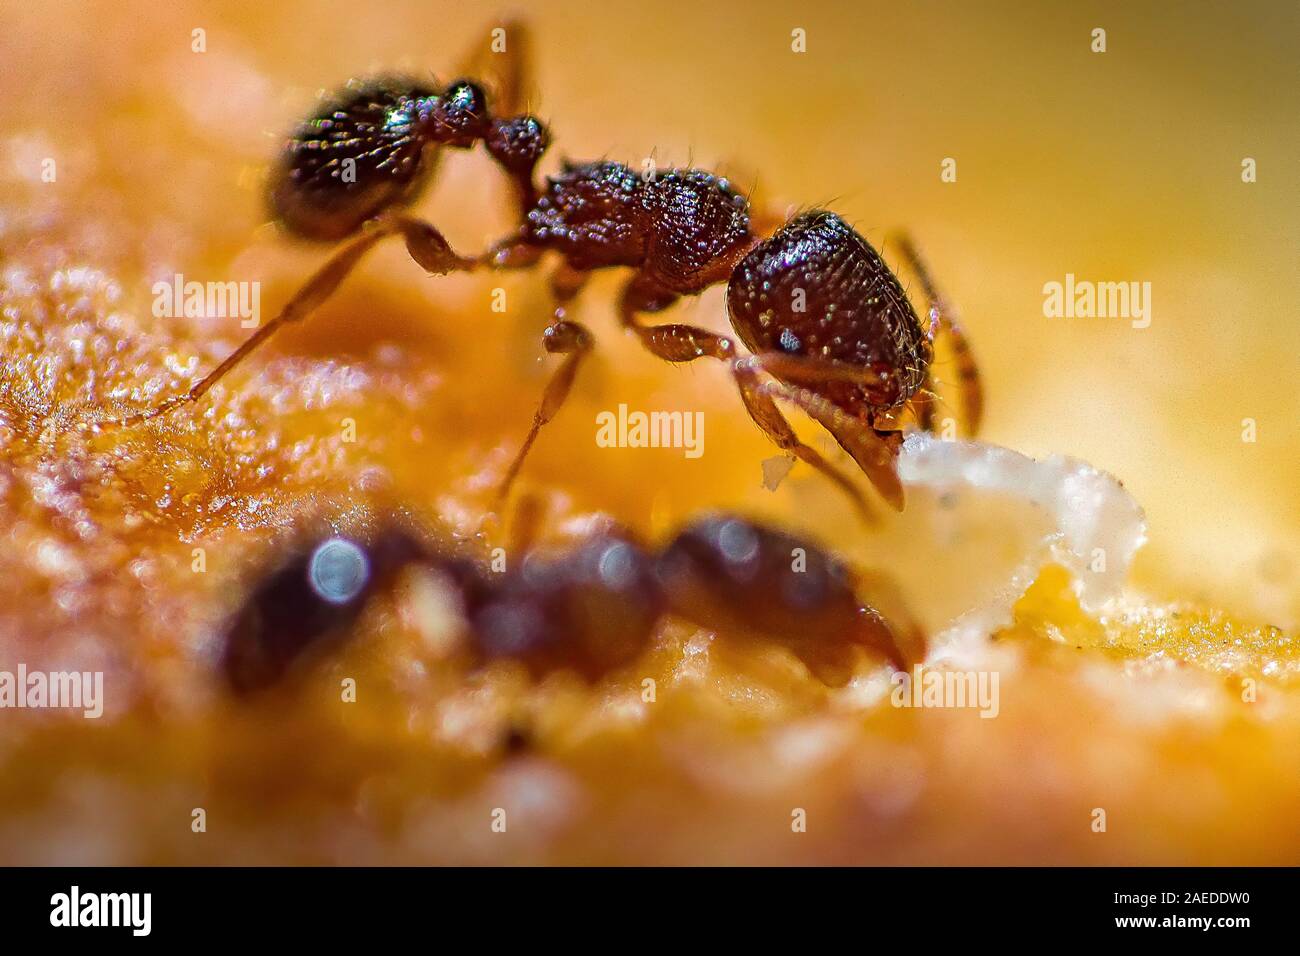 Un jour d'été J'ai été photographier dans un parc forestier où quelques fourmis sur un morceau de pain a retenu mon attention.Je me suis rapidement configurer mon appareil photo. Banque D'Images